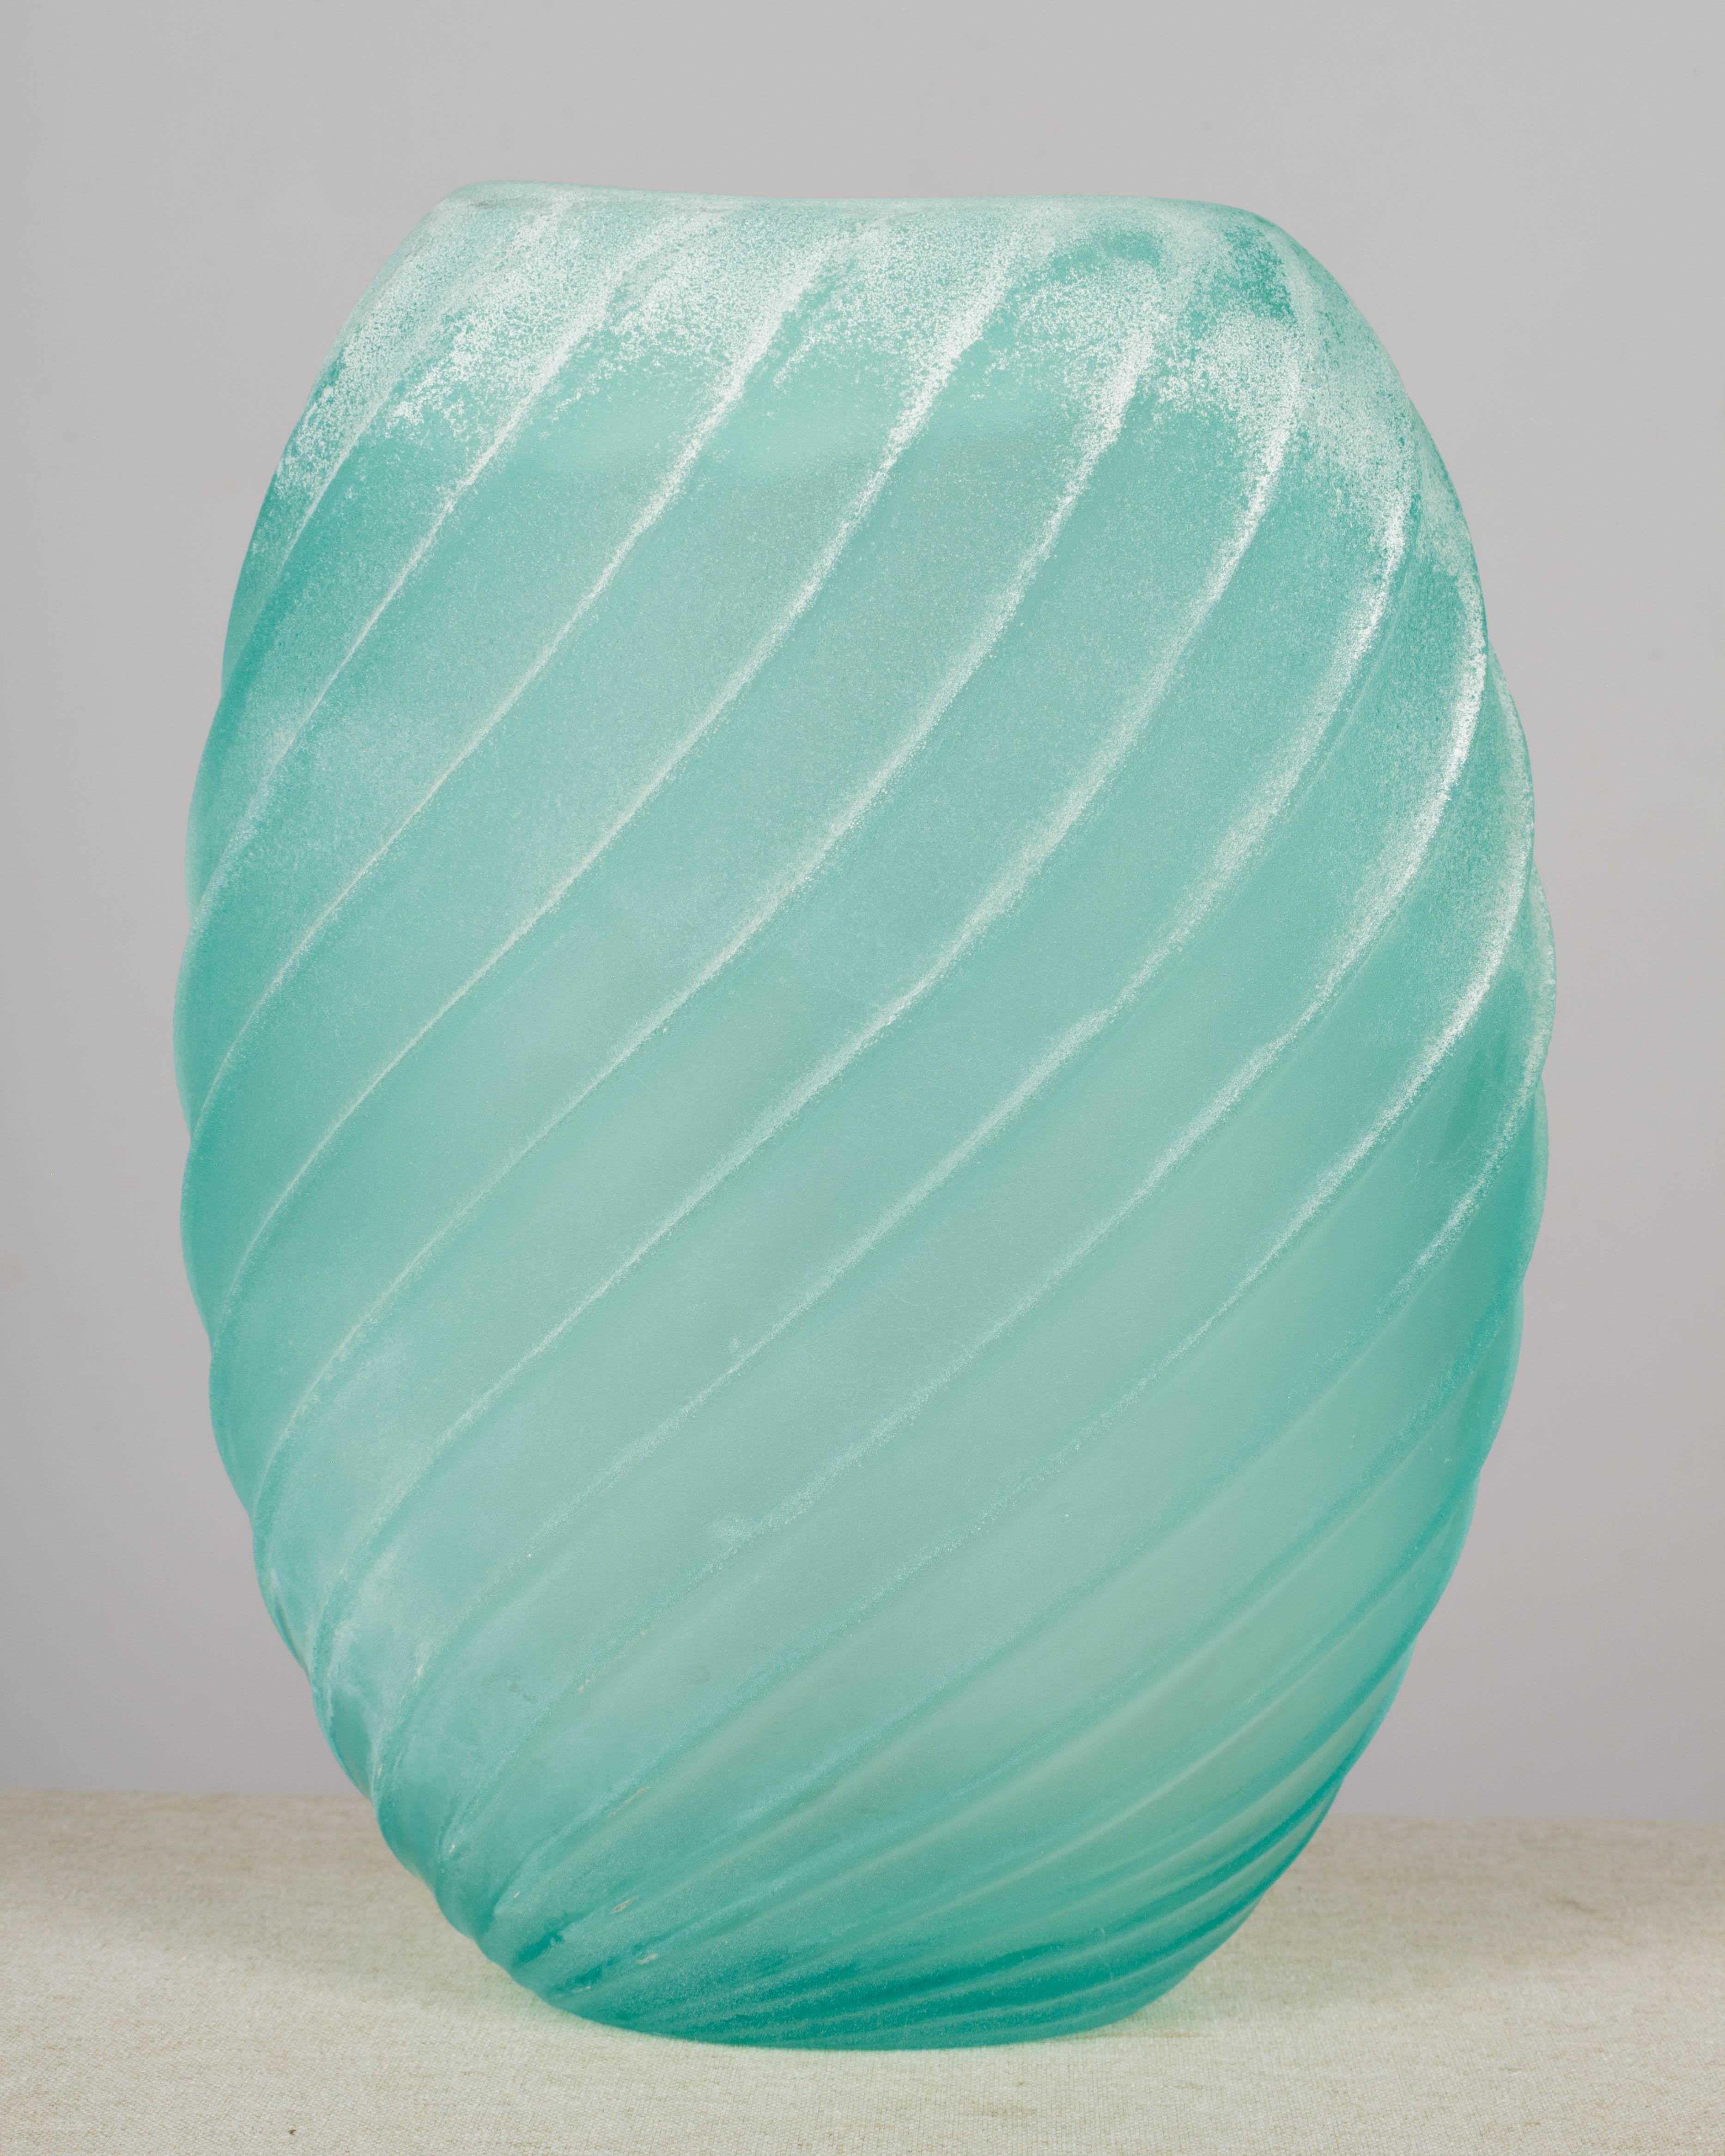 Große Vase aus Murano Scavo-Glas von Gino Cenedese mit ovaler Form und wirbelnder Vertiefung. Schöne aqua- oder meerschaumgrüne Farbe und raue Textur. Scavo ist eine Technik zur Erzeugung eines verwitterungsähnlichen Effekts, der Glas aus einer